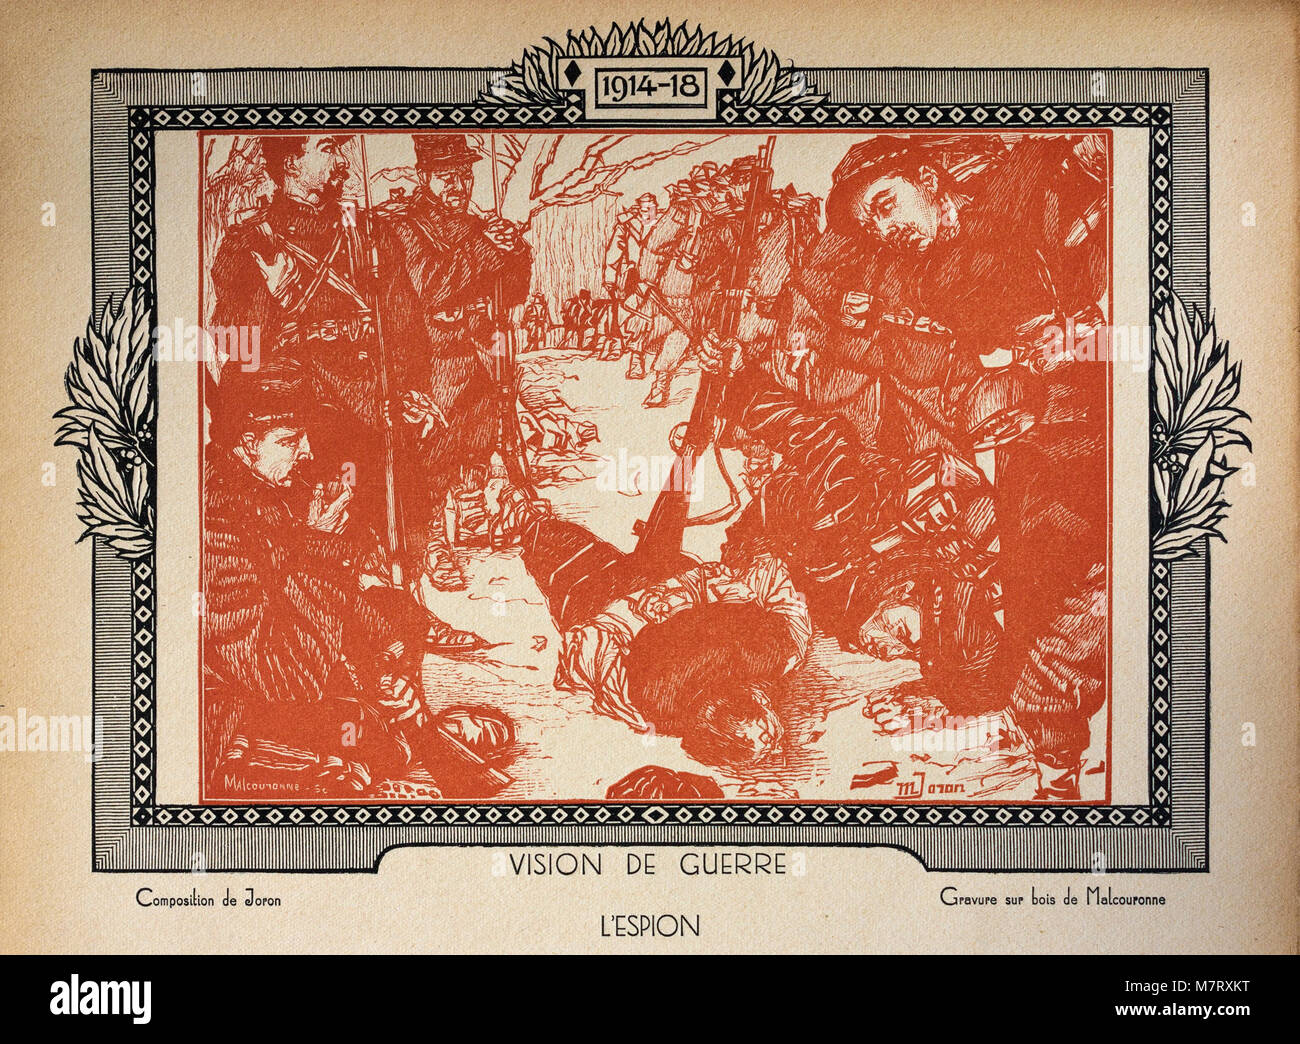 La gravure sur bois de WW1 'Le Spy', d'abord publié en 1920 en anglais livre 'La guerre racontée par nos généraux' (La guerre racontée par nos généraux) par FAYOLLE (maréchal) et DUBAIL (Général). Banque D'Images